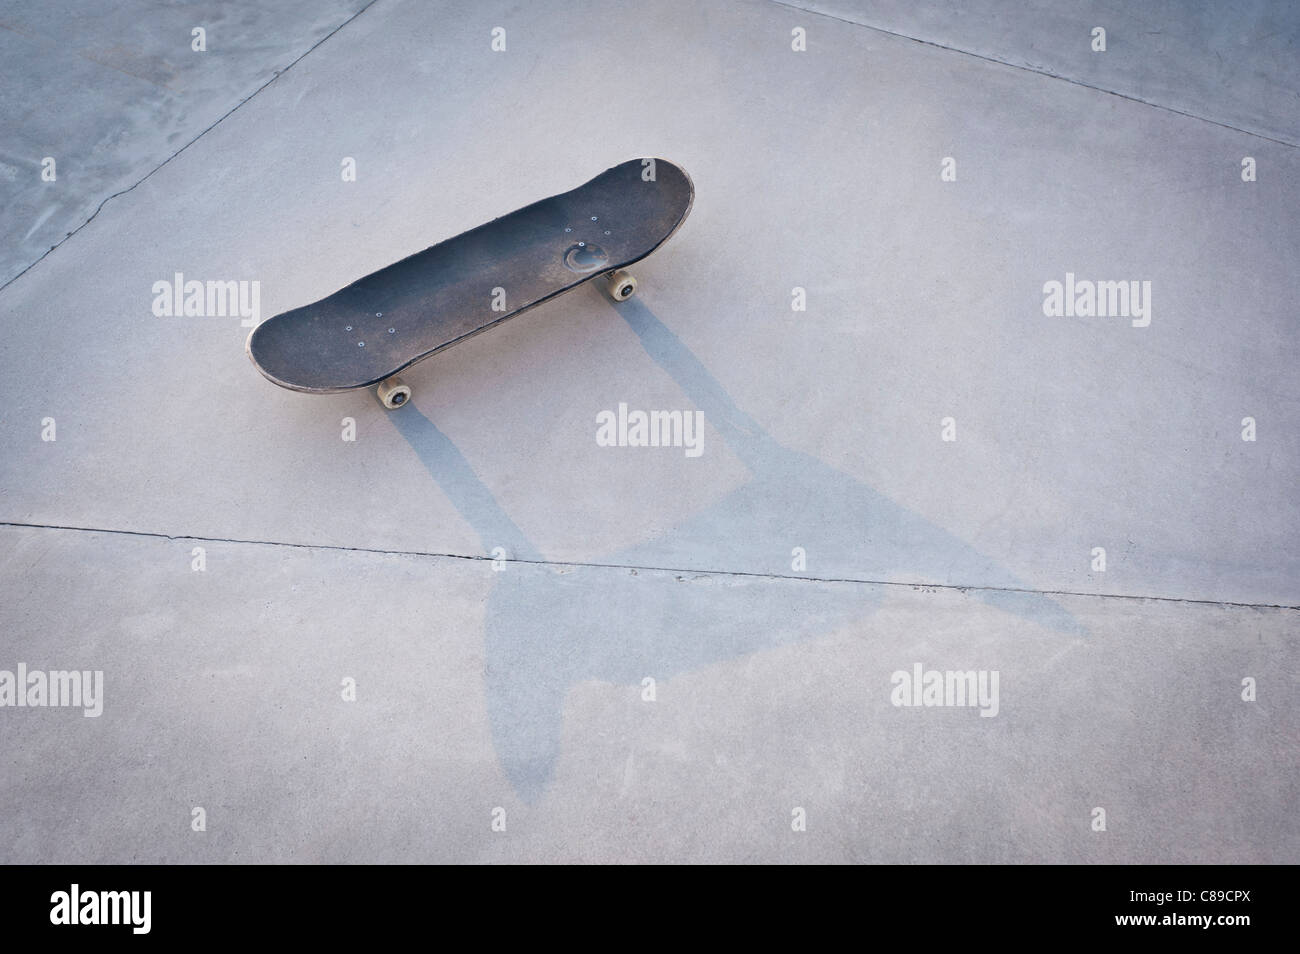 Belgium, Mechelen, Skateboard lying on ground in public skatepark Stock Photo